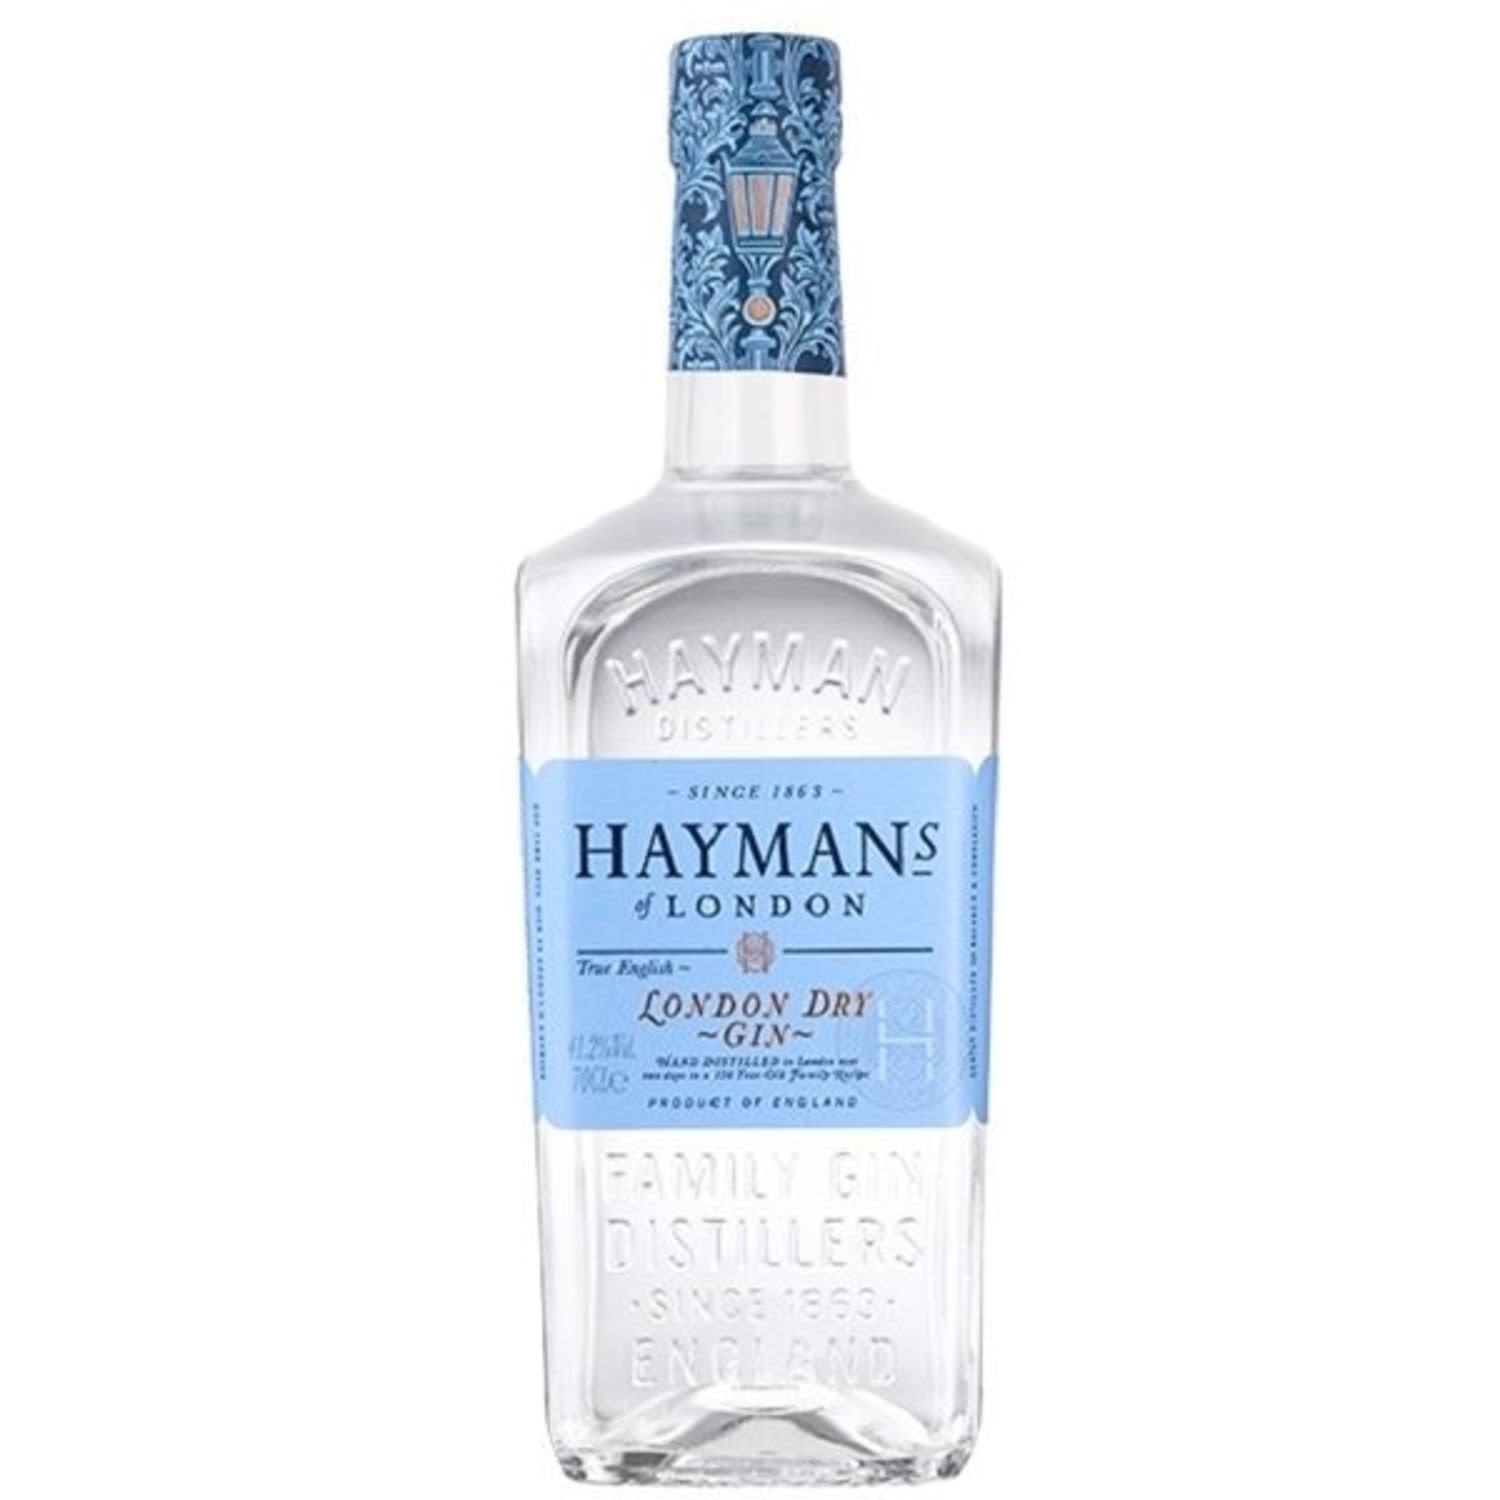 Hayman's London Dry Gin 41.2% 700mL Bottle